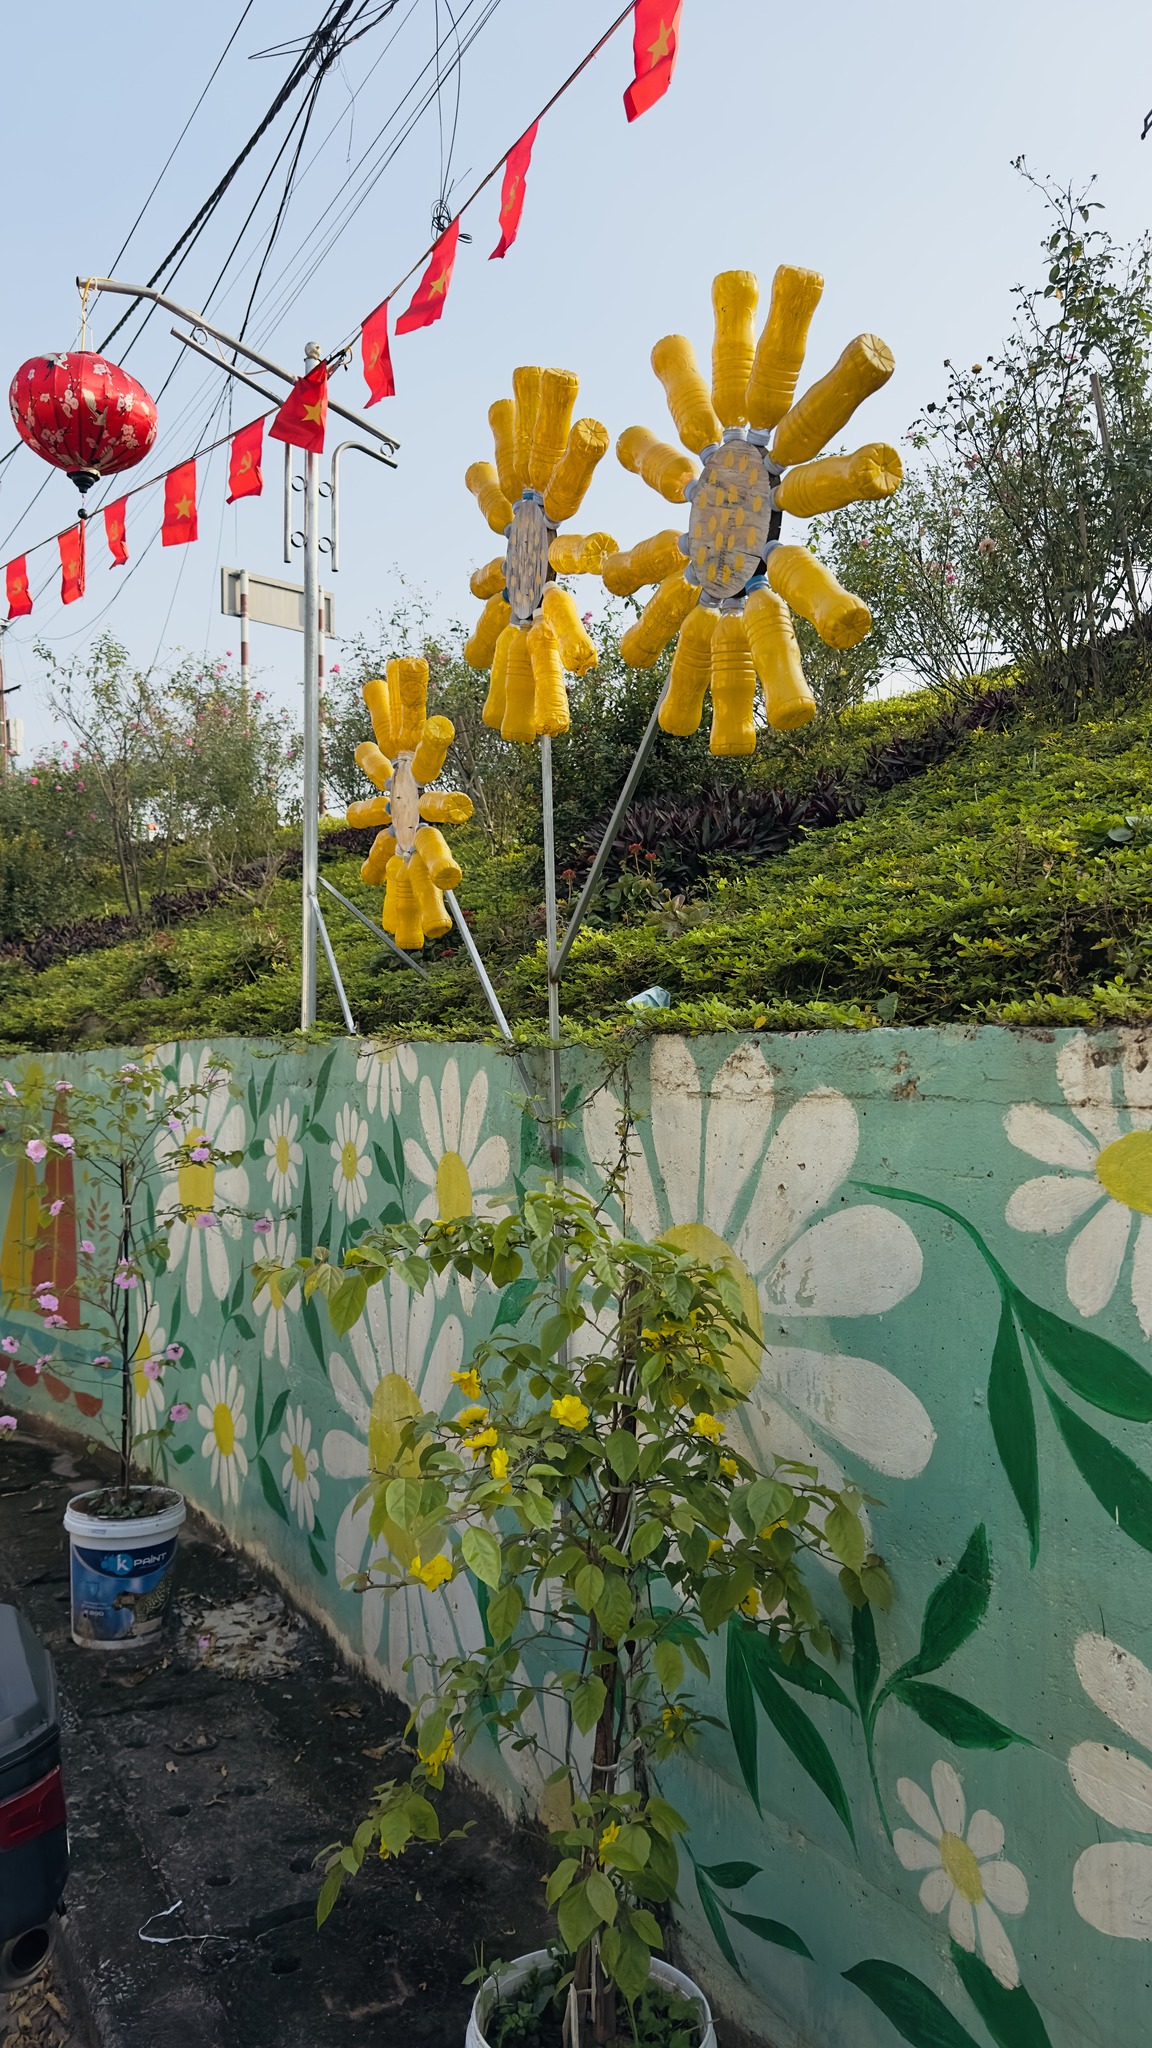 Cùng với chủ đề bảo vệ môi trường trên bích họa, người dân địa phương còn tận dụng các chai nhựa để tạo nên bông hoa hướng dương nhằm truyền tải thông điệp về bảo vệ môi trường.